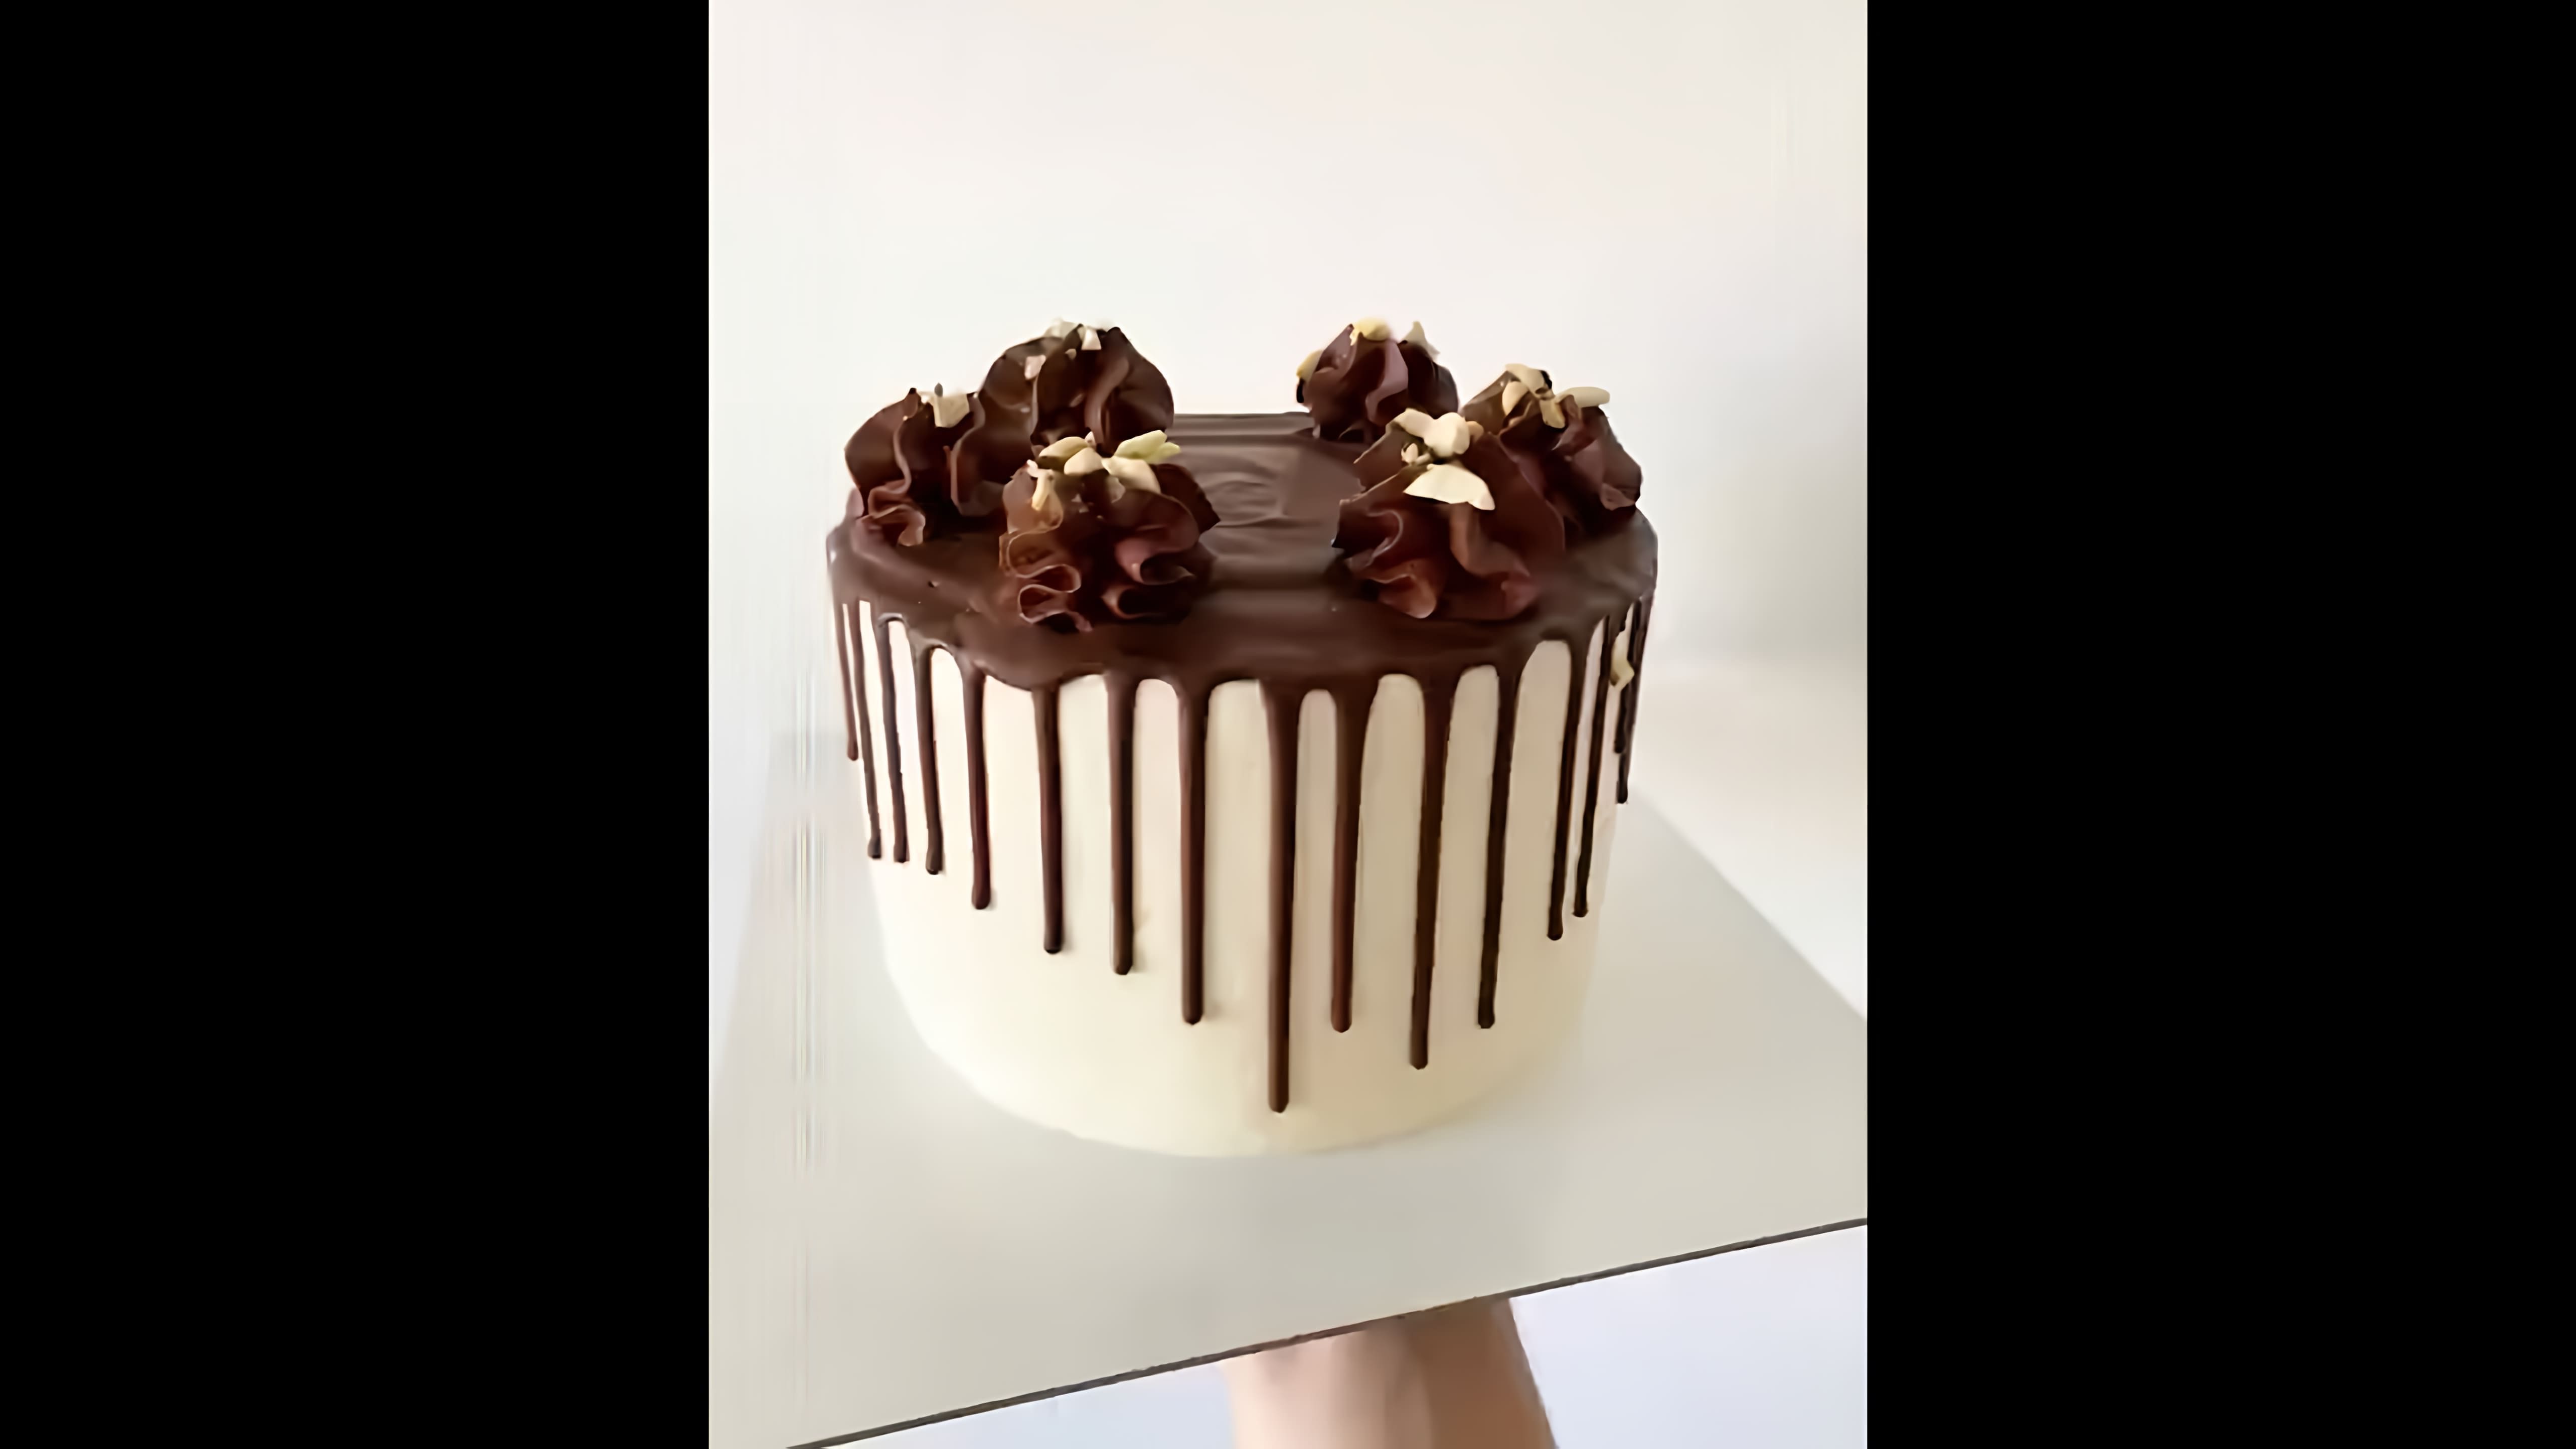 В этом видео показано, как сделать идеальные шоколадные подтеки на торте